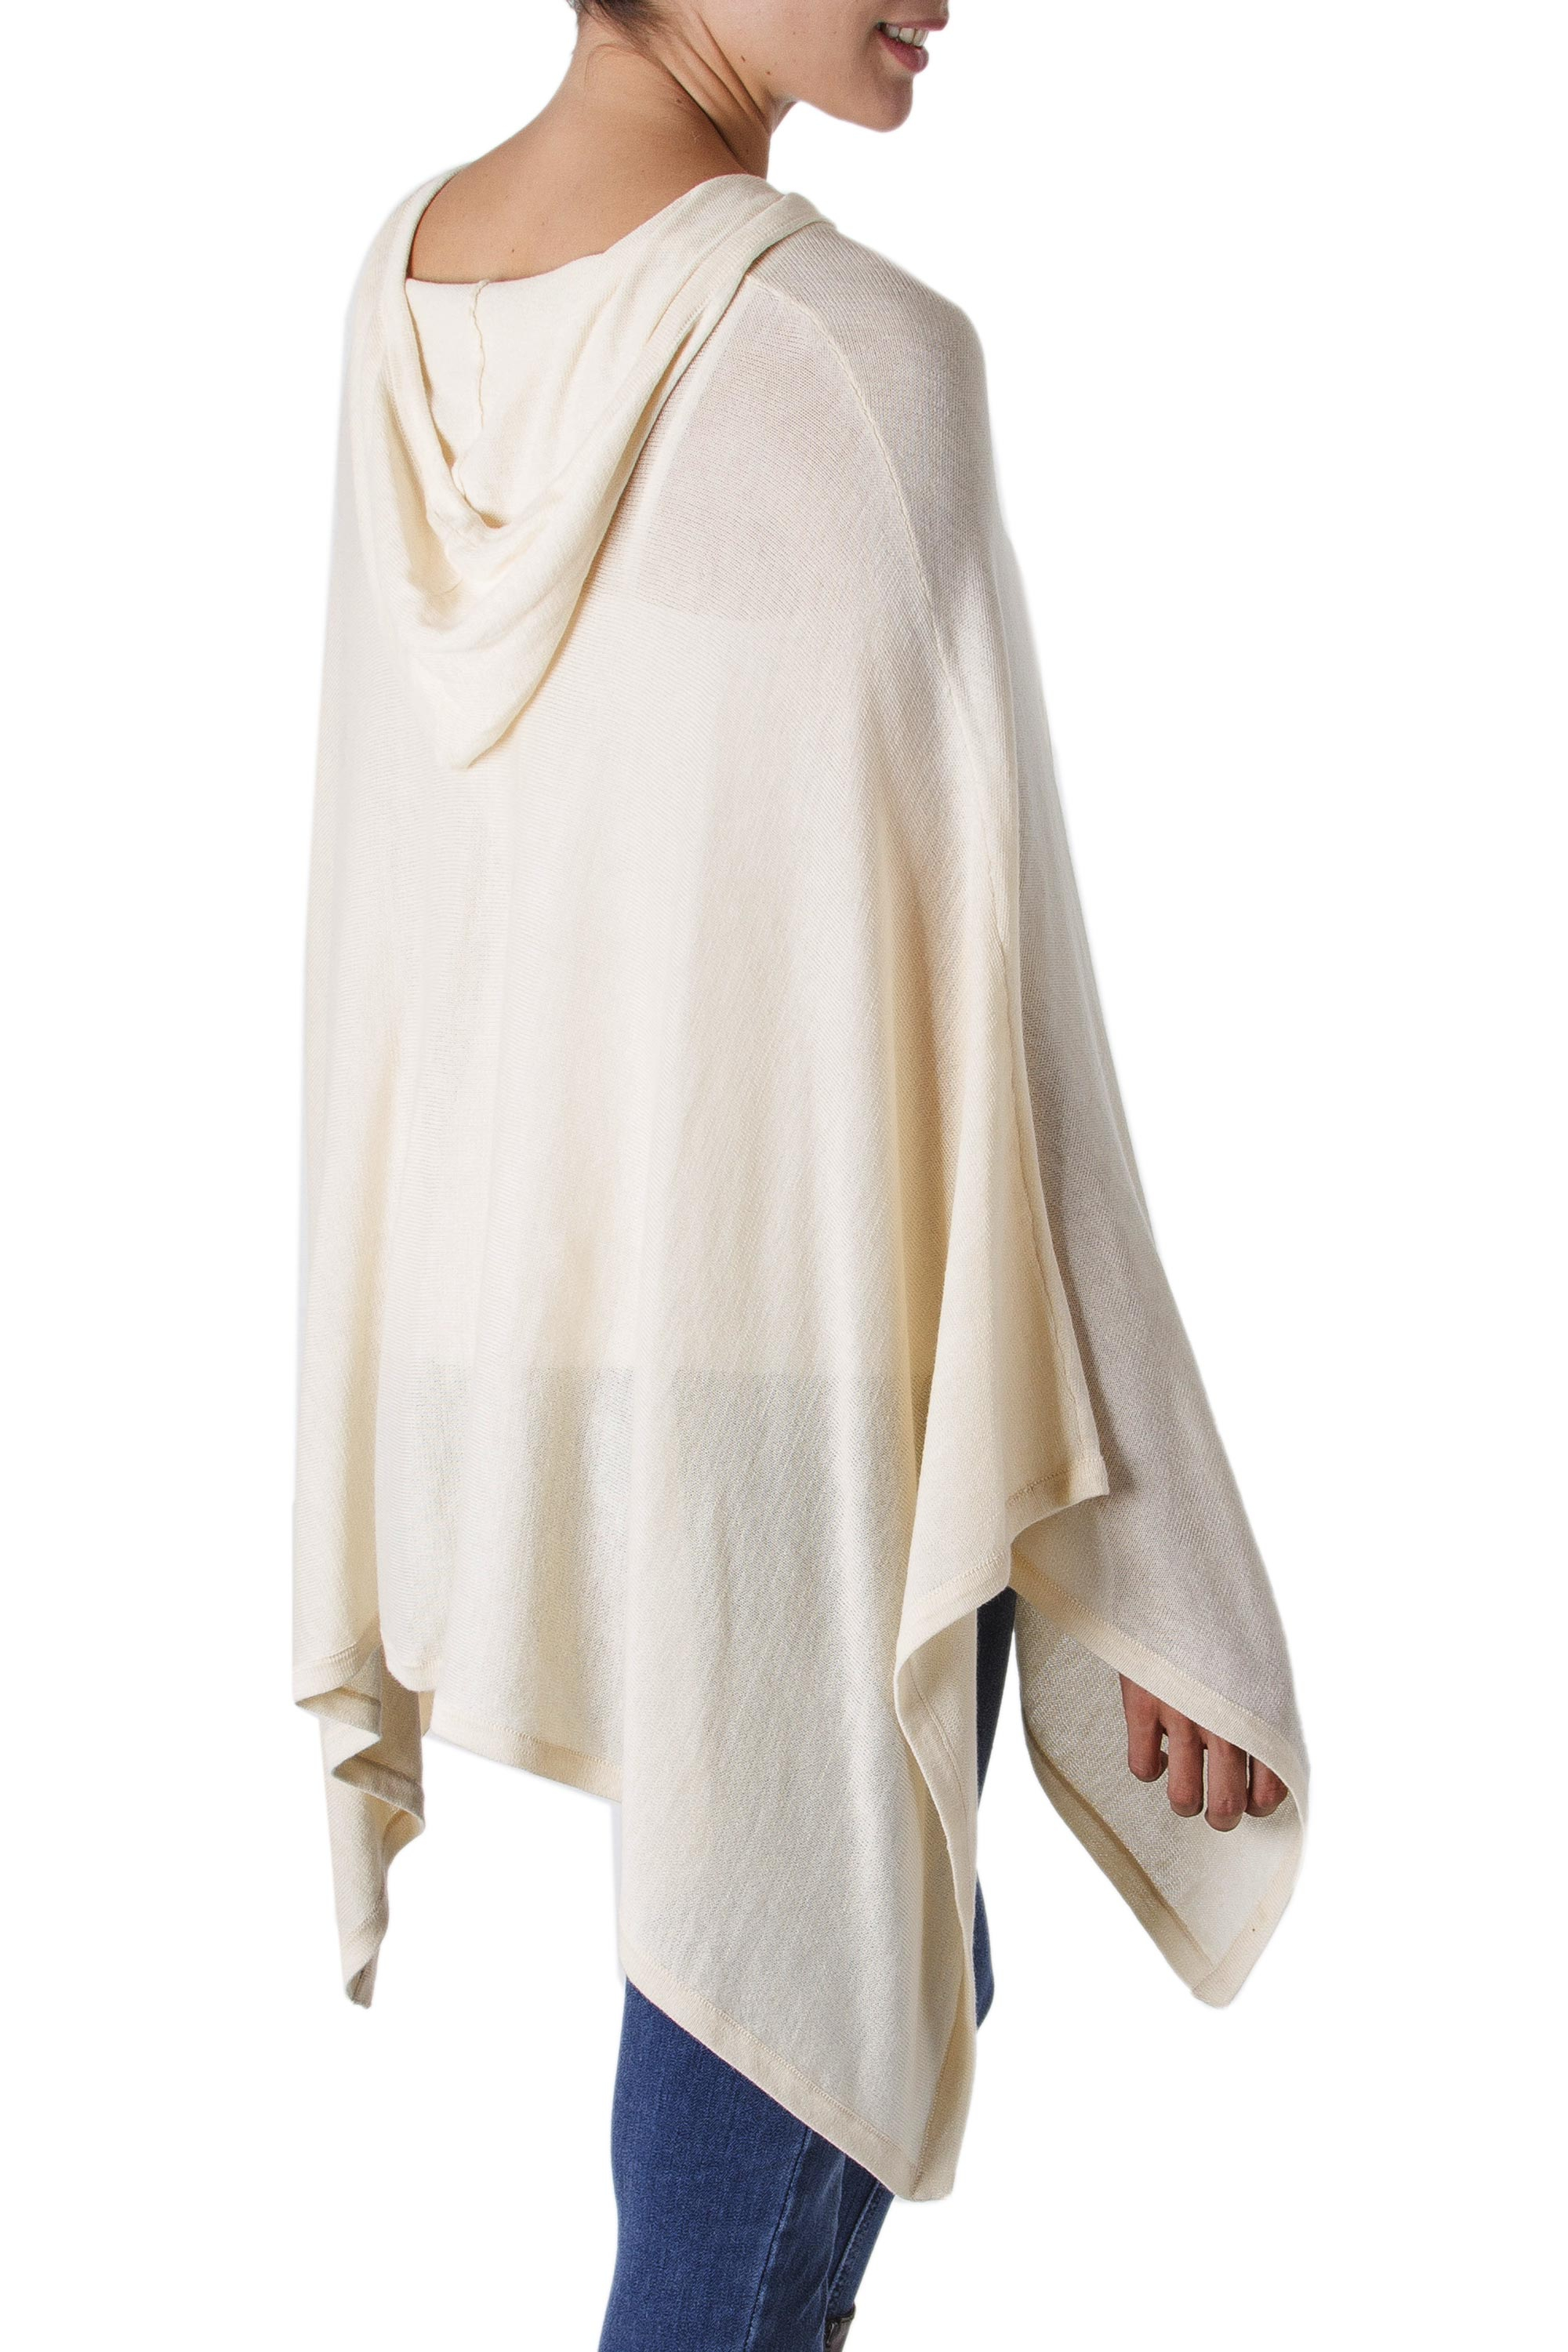 Women's Peruvian Pima Cotton Hooded Poncho in Ecru - Trendy Ecru | NOVICA